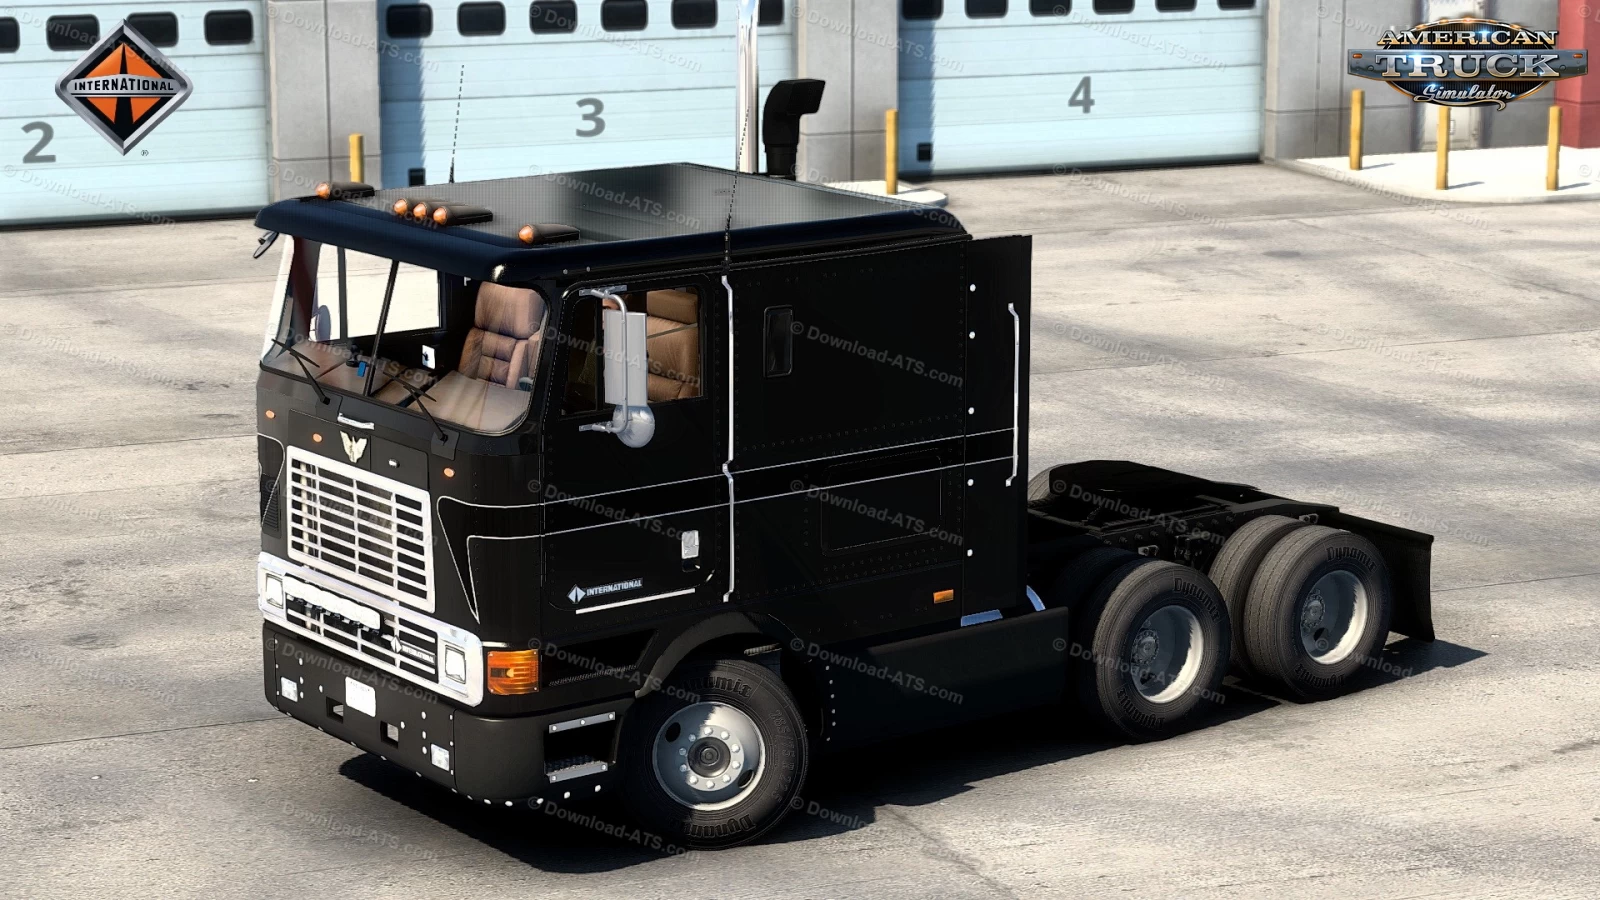 International 9800i Truck + Interior v2.5 (1.45.x) for ATS